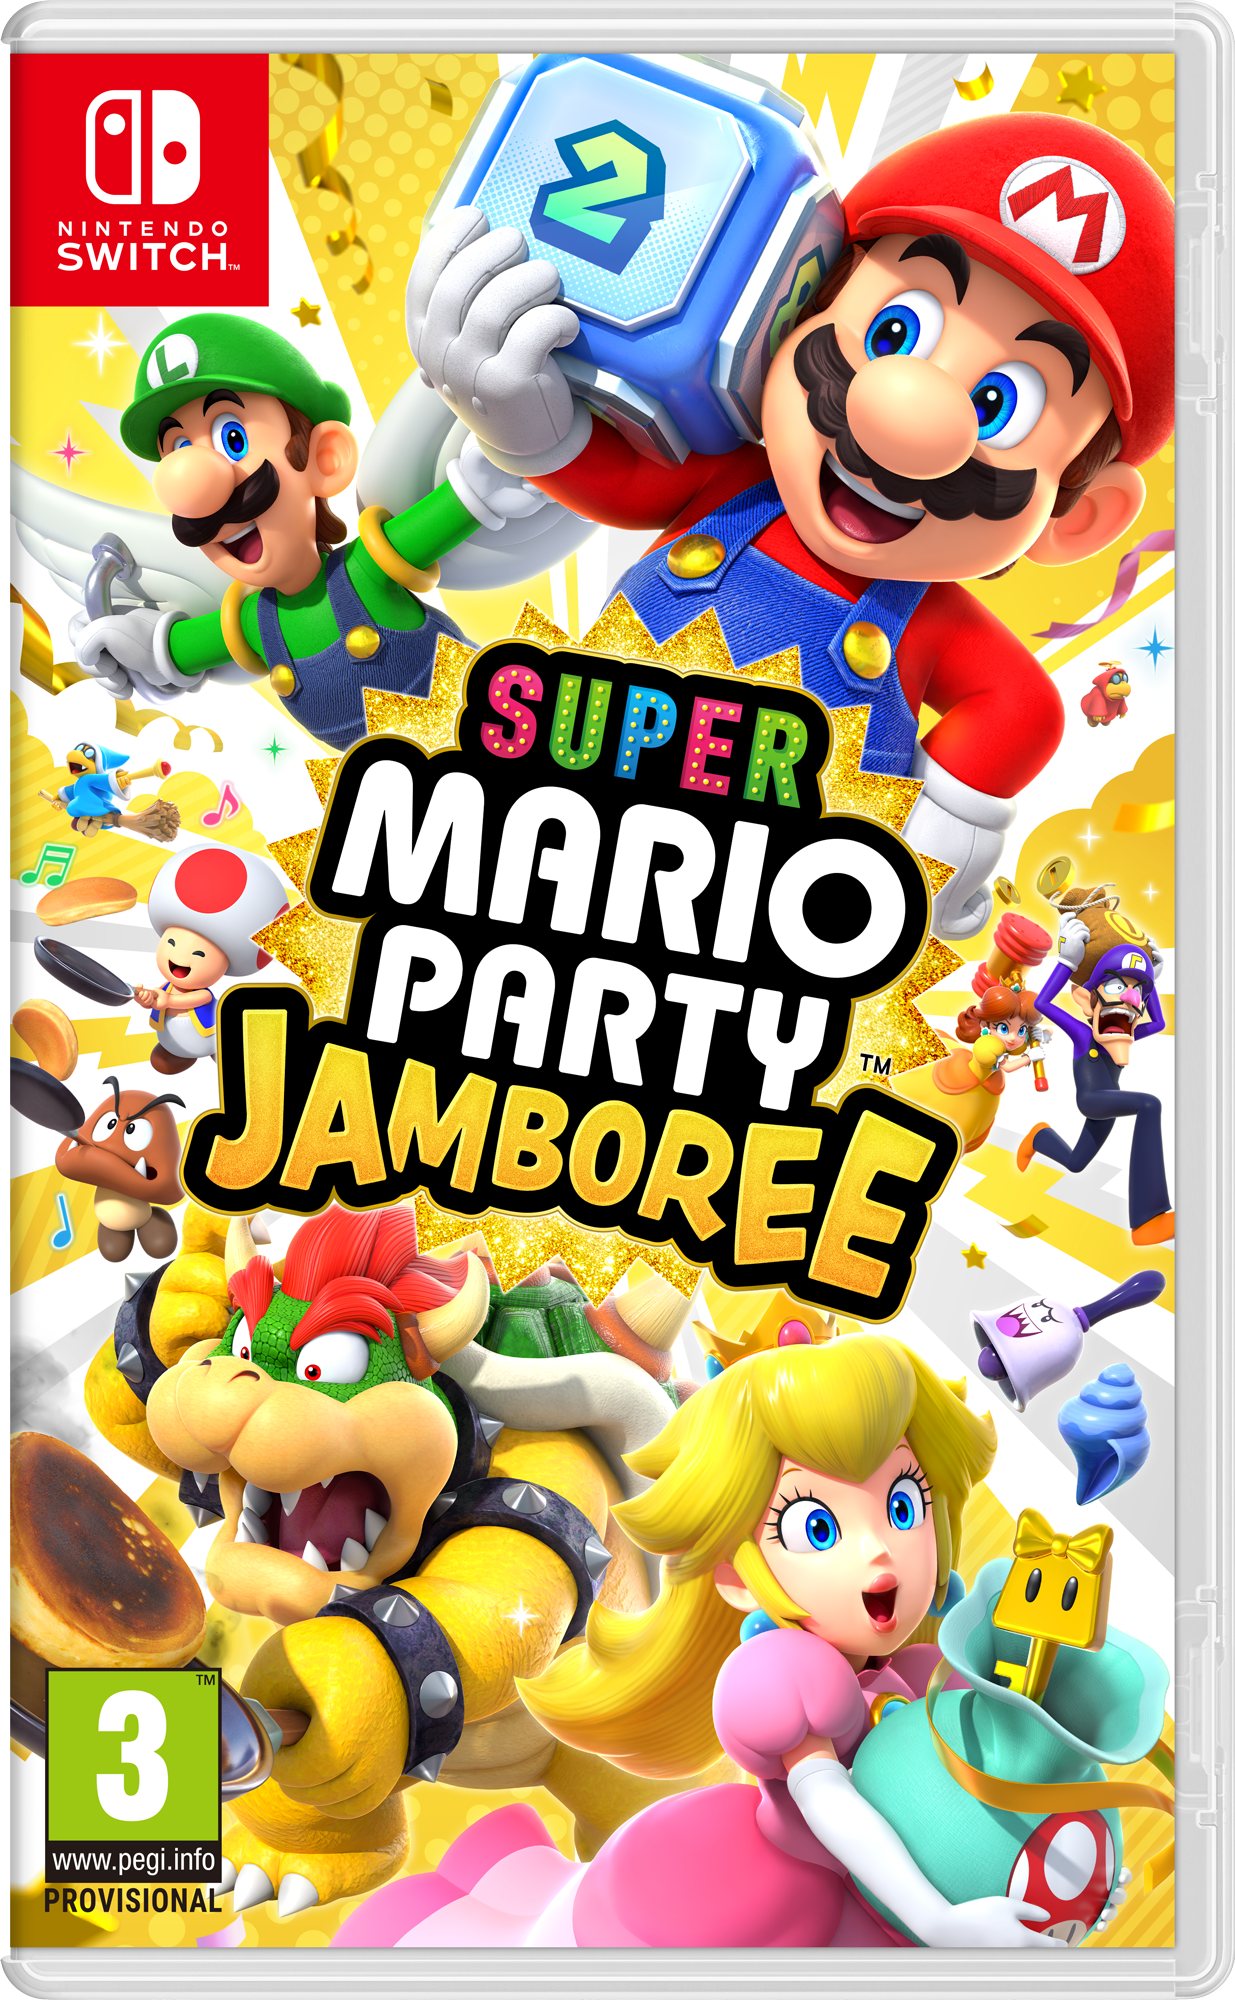 Mario Party: Jamboree